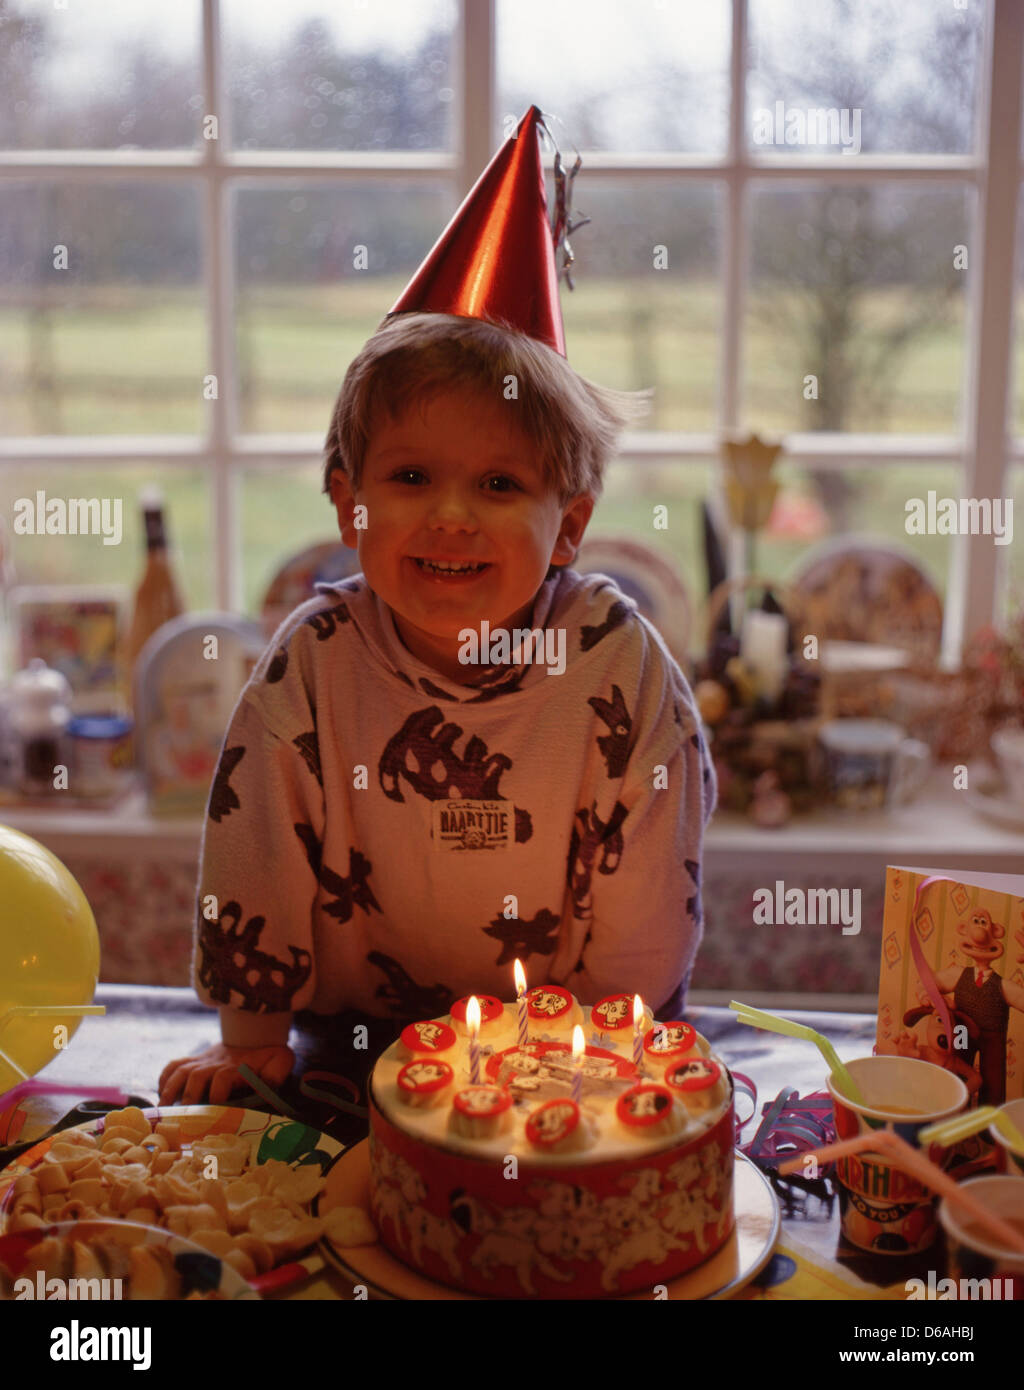 Ragazzo con il suo quarto compleanno torta, Winkfield, Berkshire, Inghilterra, Regno Unito Foto Stock